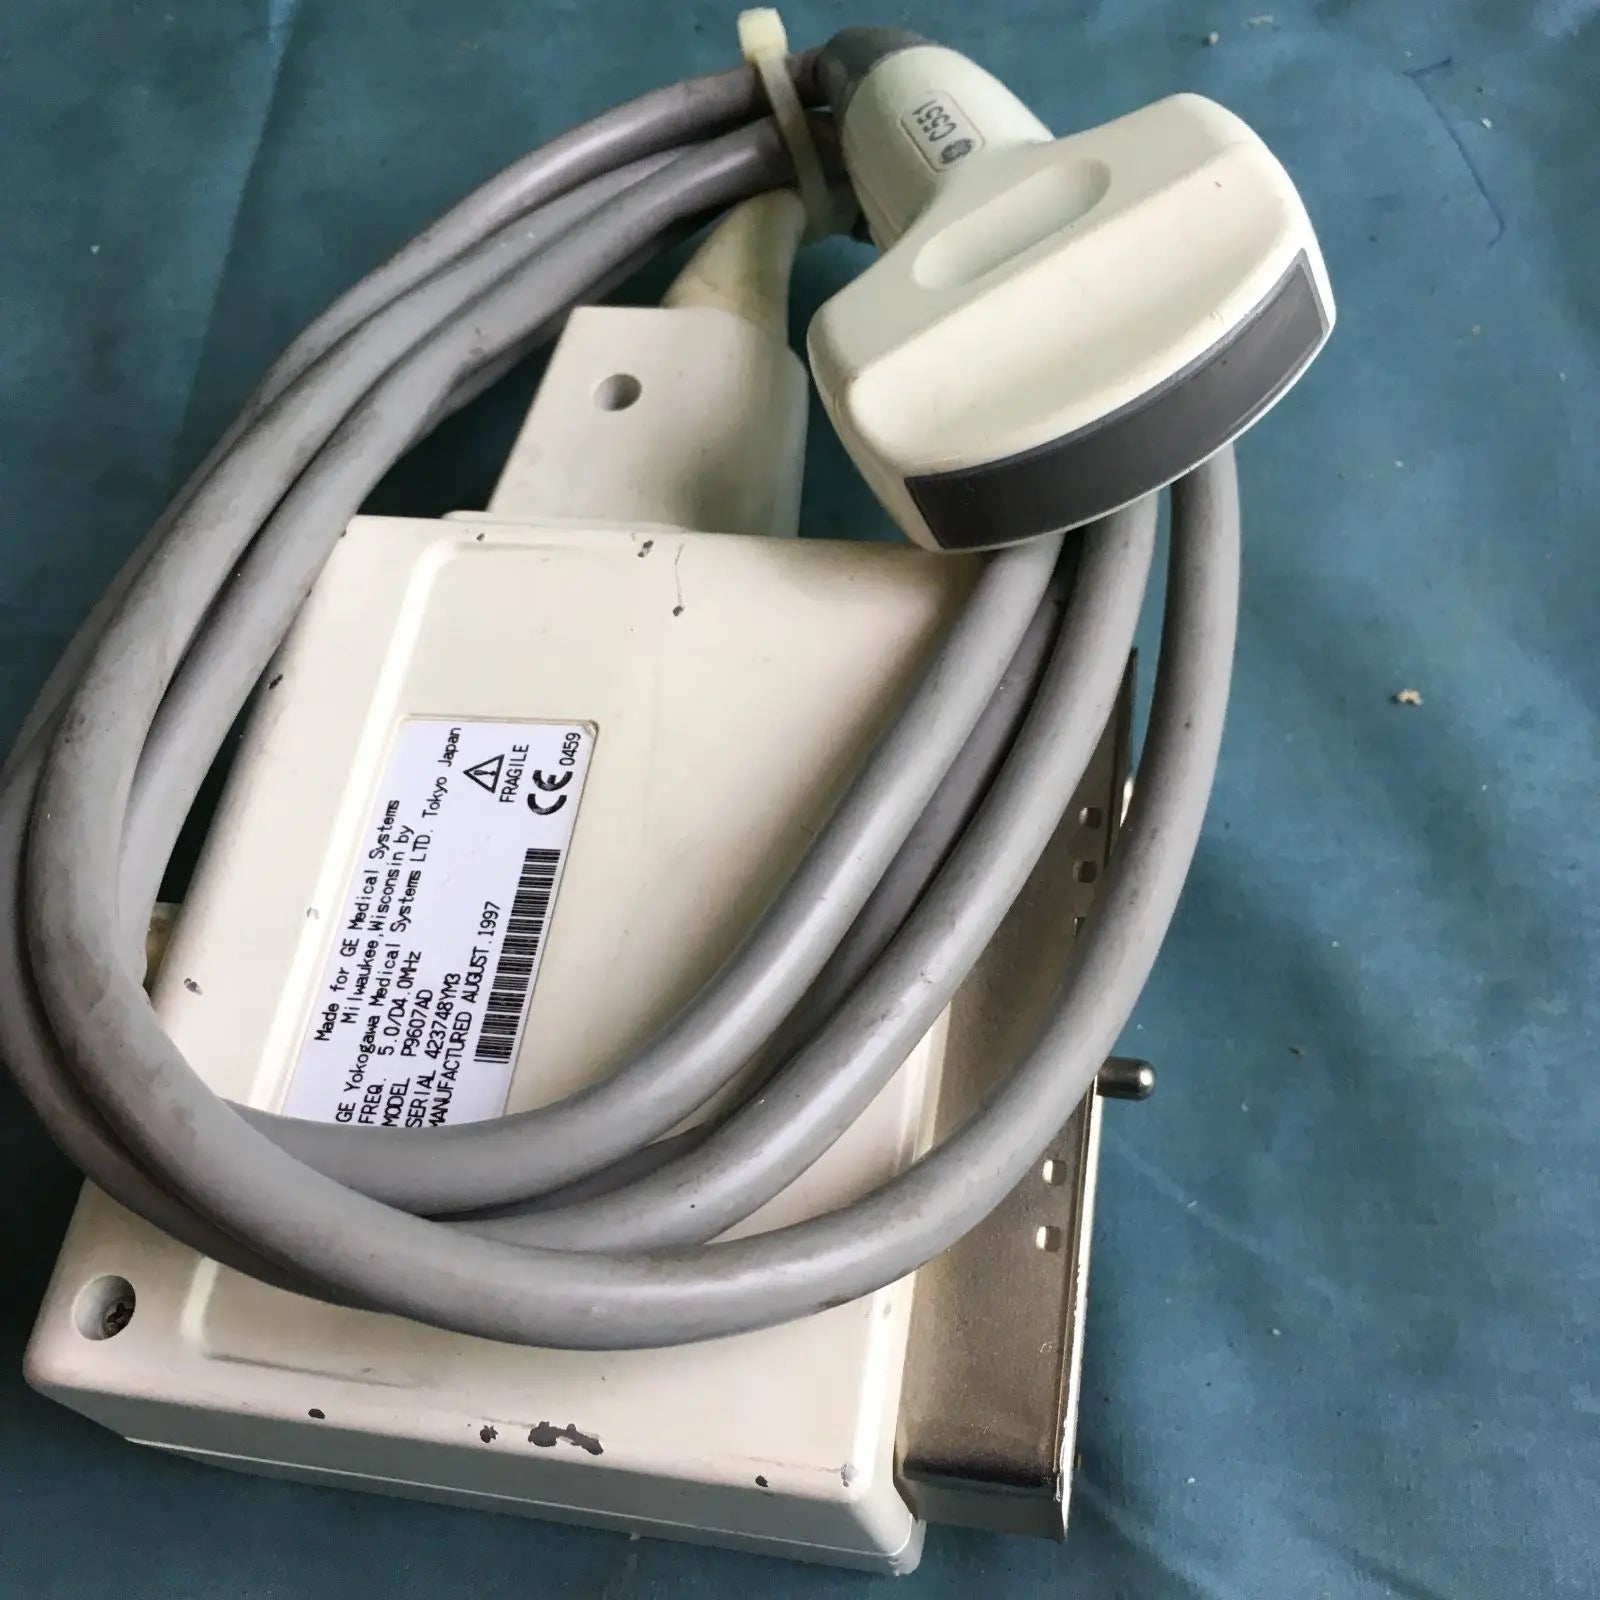 GE YOKOGAWA C551 Ultrasound Transducer Probe, Model P9607AD